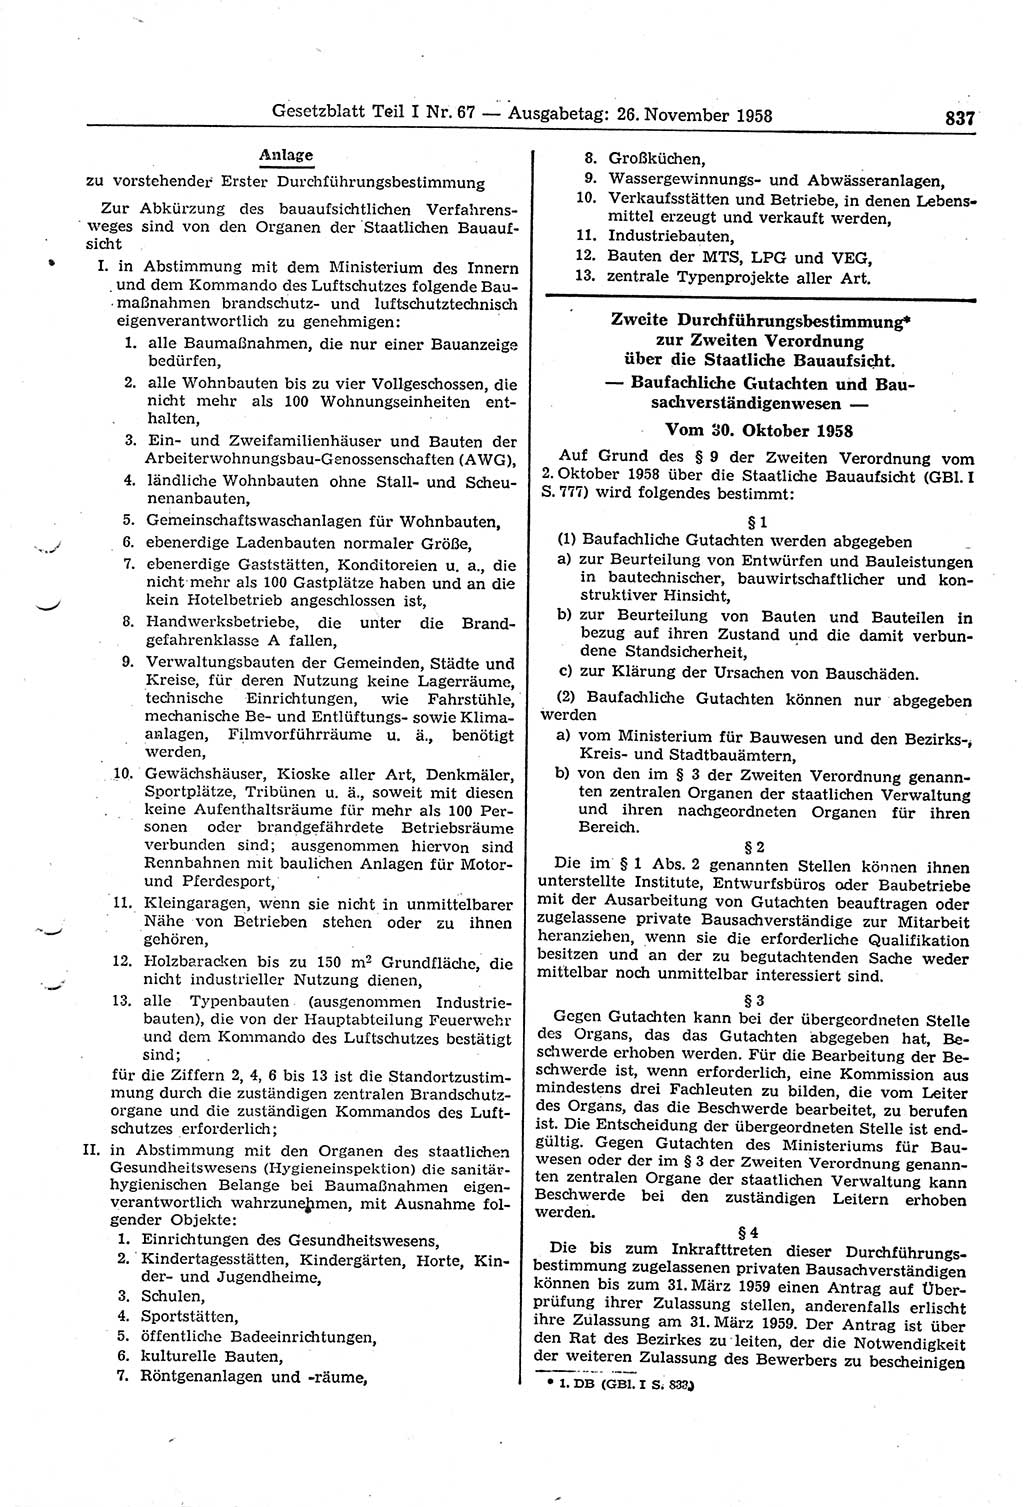 Gesetzblatt (GBl.) der Deutschen Demokratischen Republik (DDR) Teil Ⅰ 1958, Seite 837 (GBl. DDR Ⅰ 1958, S. 837)